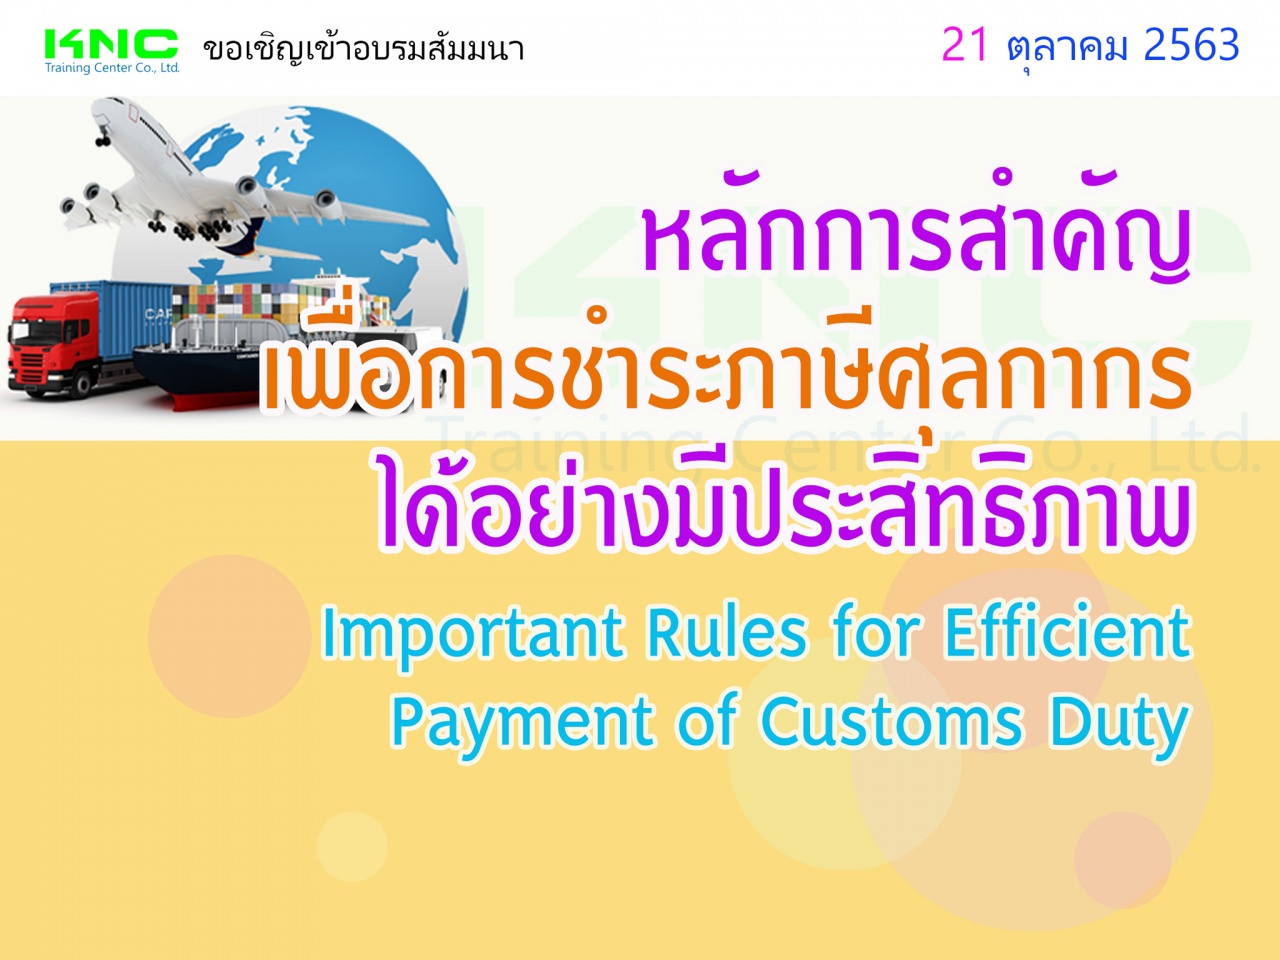 หลักการสำคัญเพื่อการชำระภาษีศุลกากรได้อย่างมีประสิทธิภาพ (Important Rules for Efficient Payment of Customs Duty)